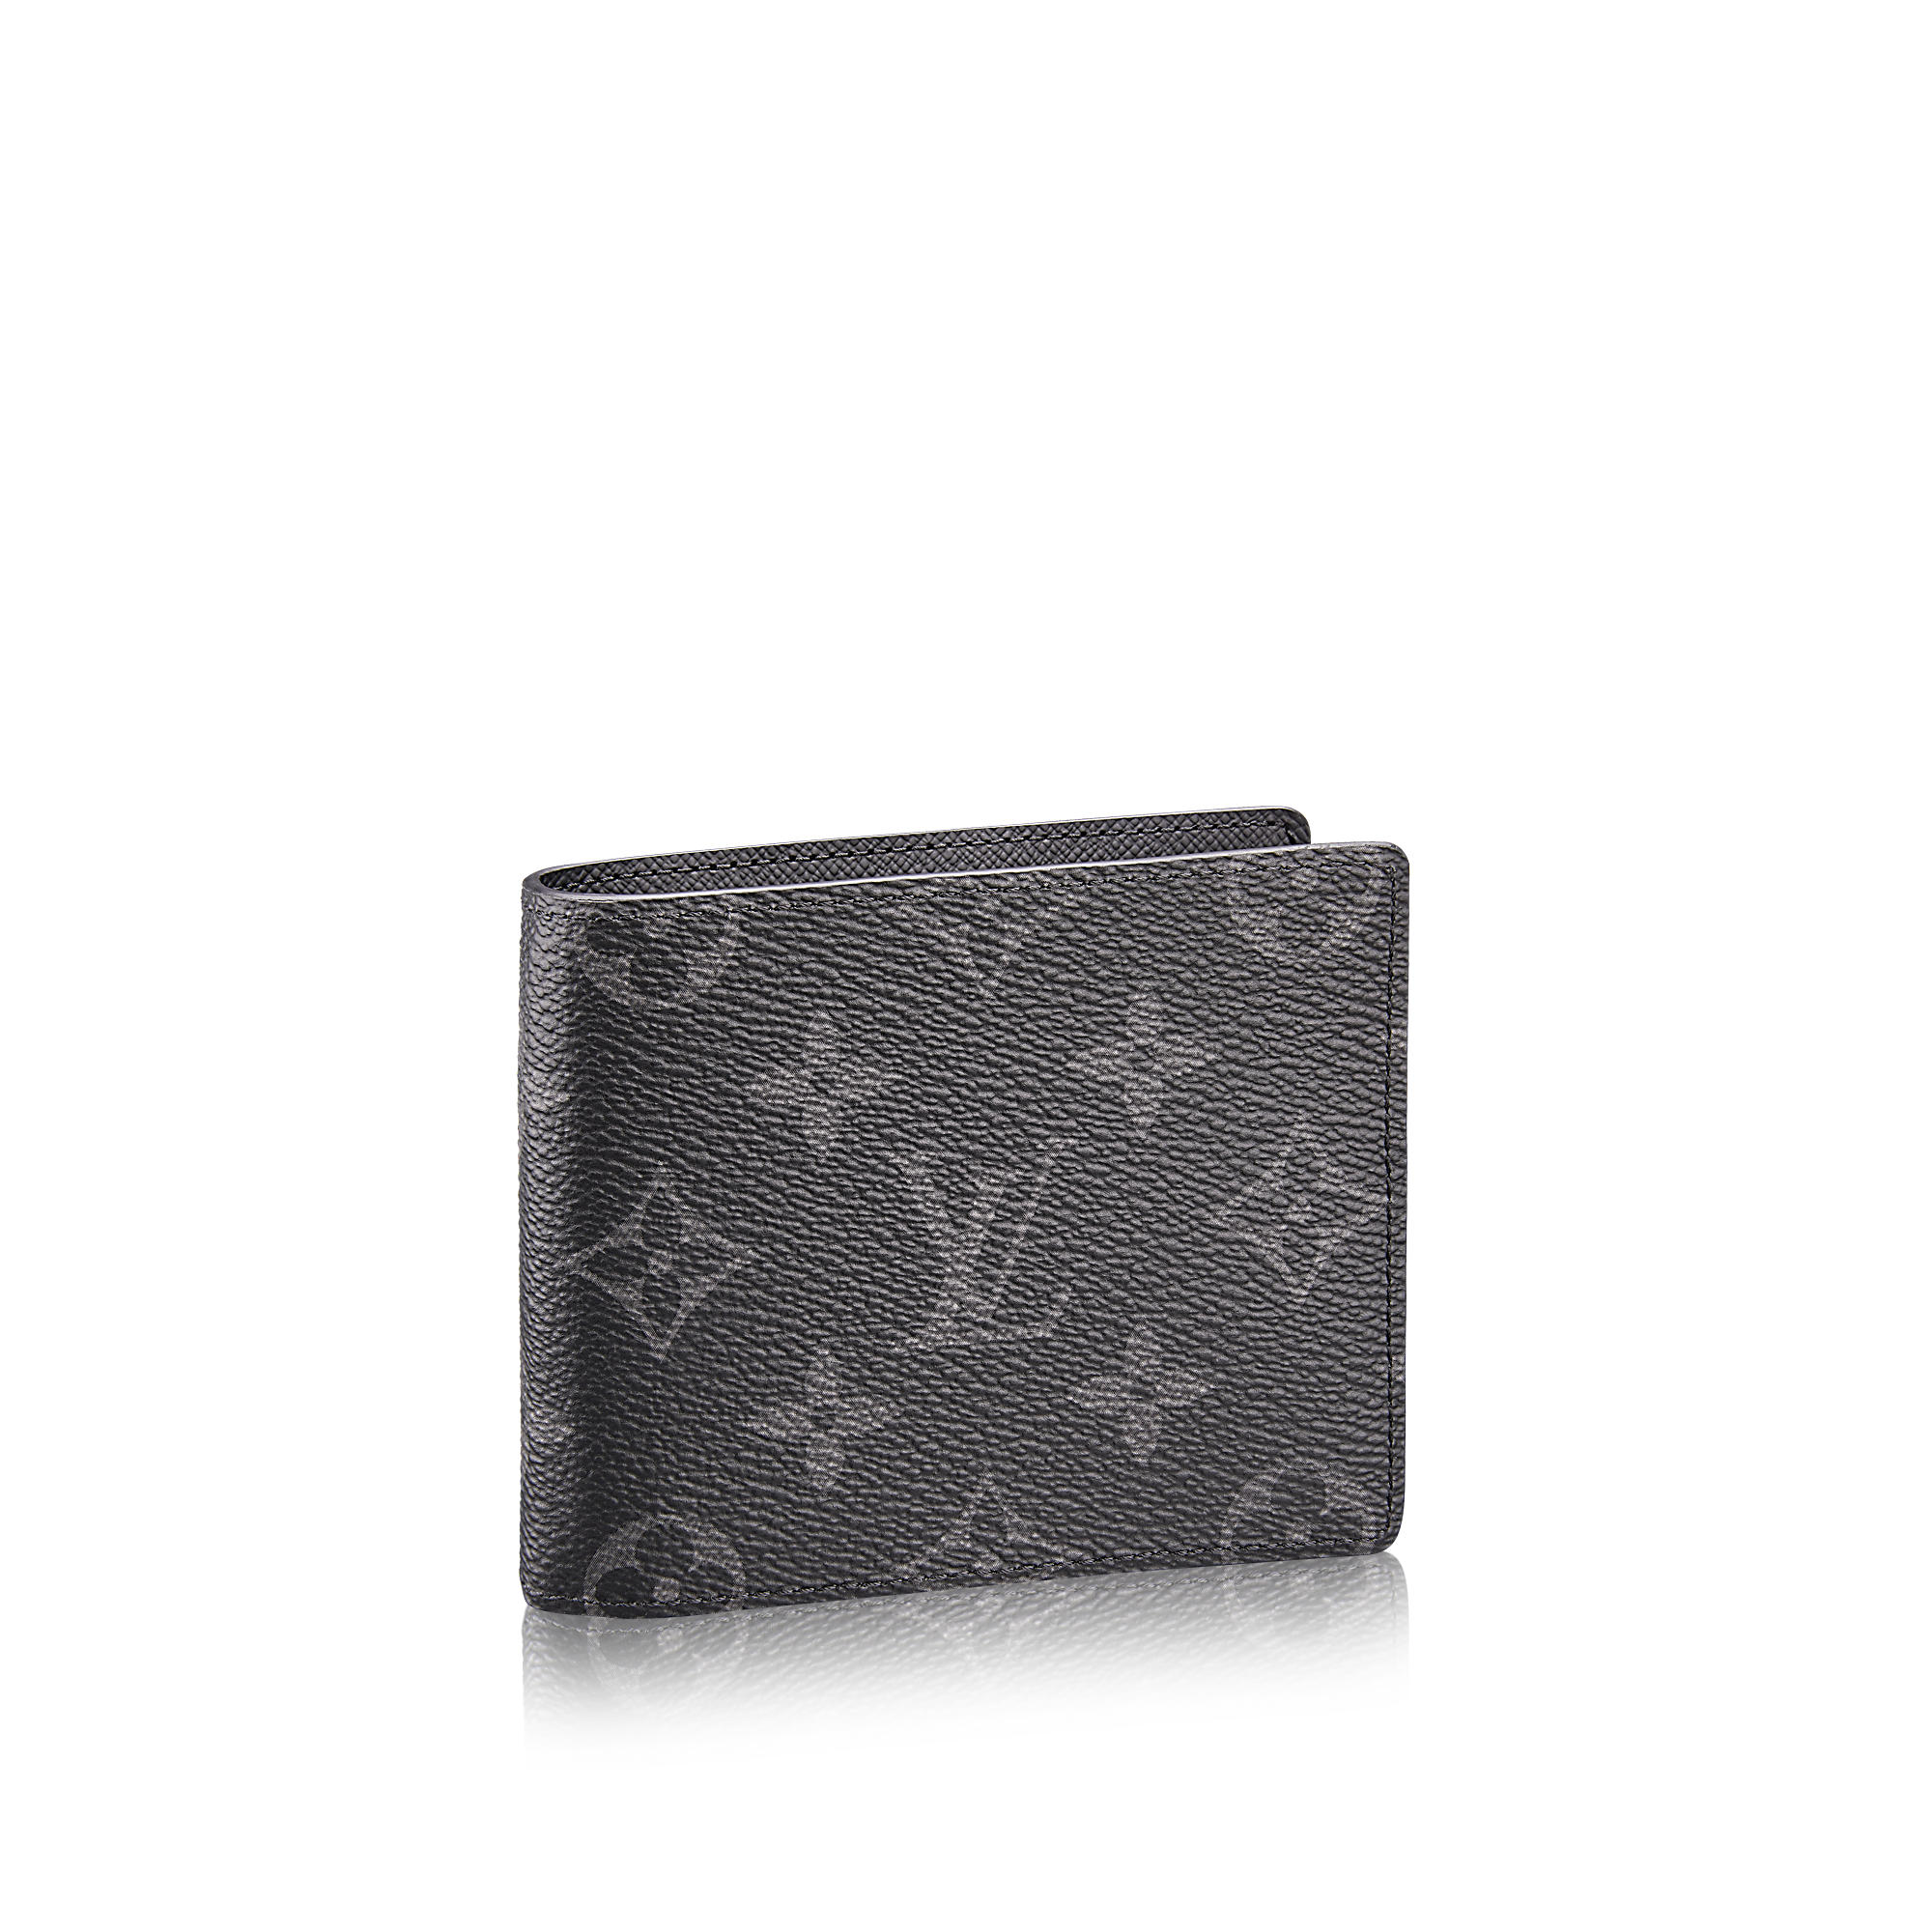 Louis Vuitton Monogram Canvas Pince Wallet Louis Vuitton